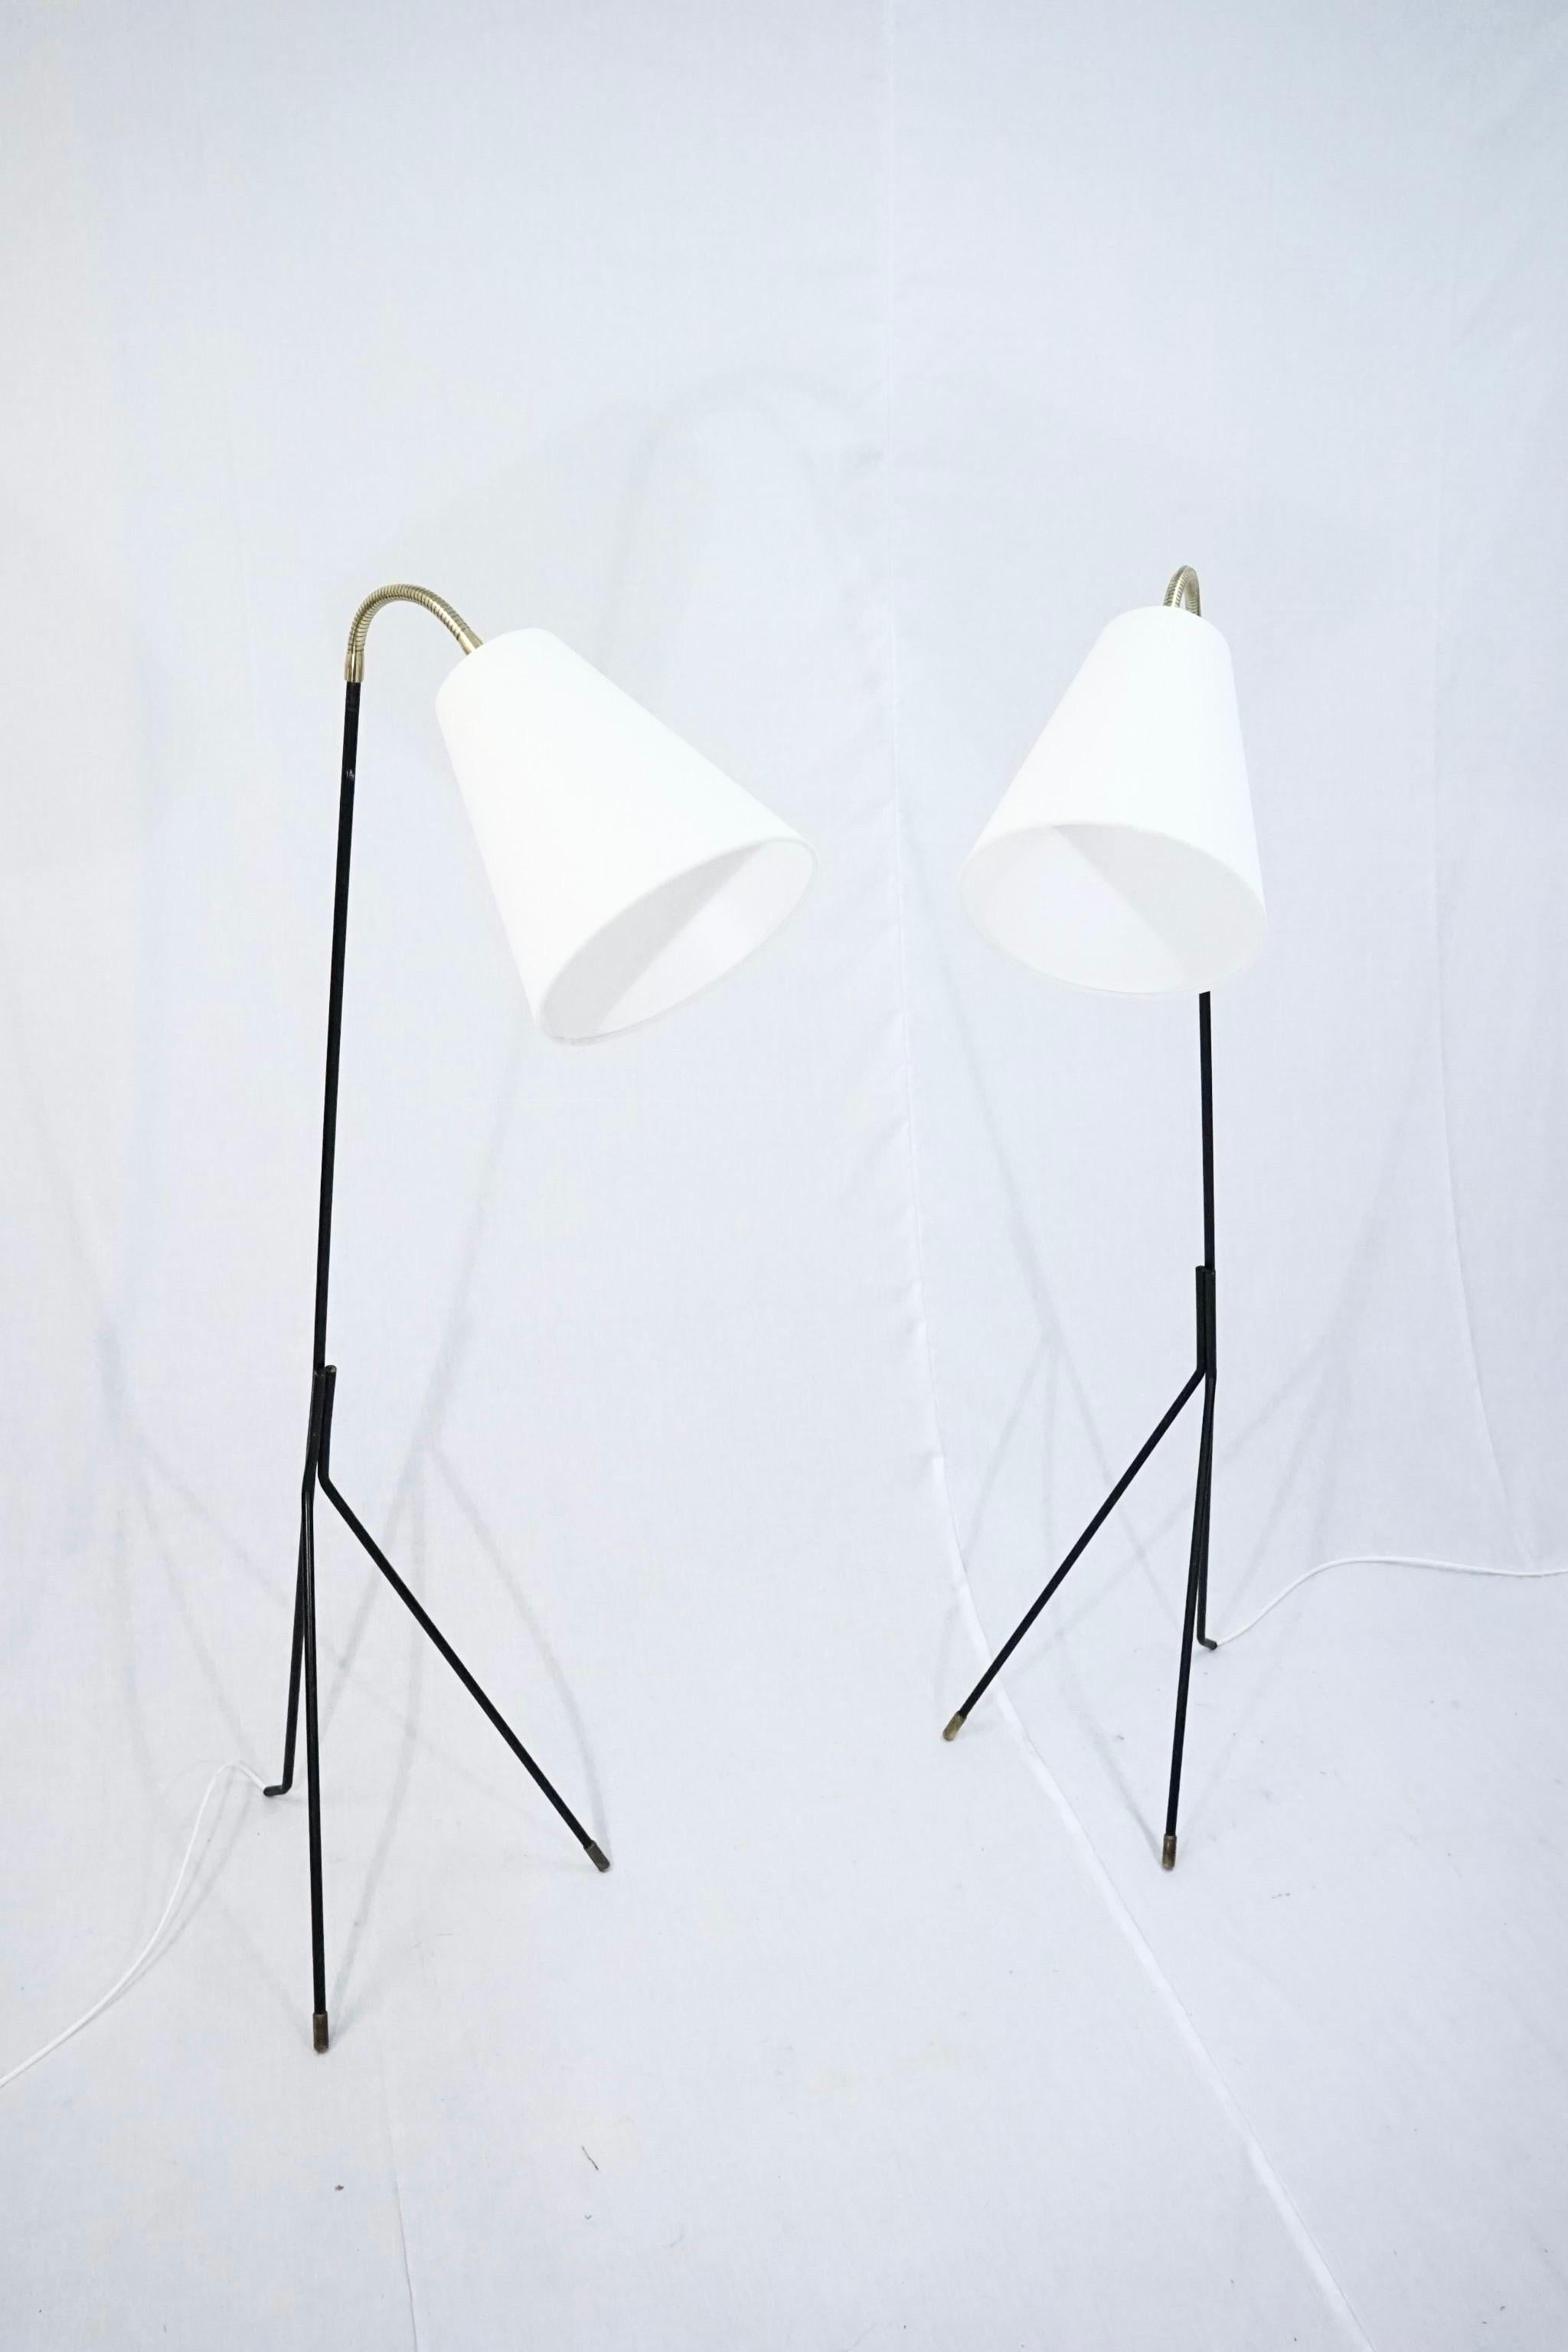 Mid-20th Century Set of two Holm Sørensen grasshopper floor lamps